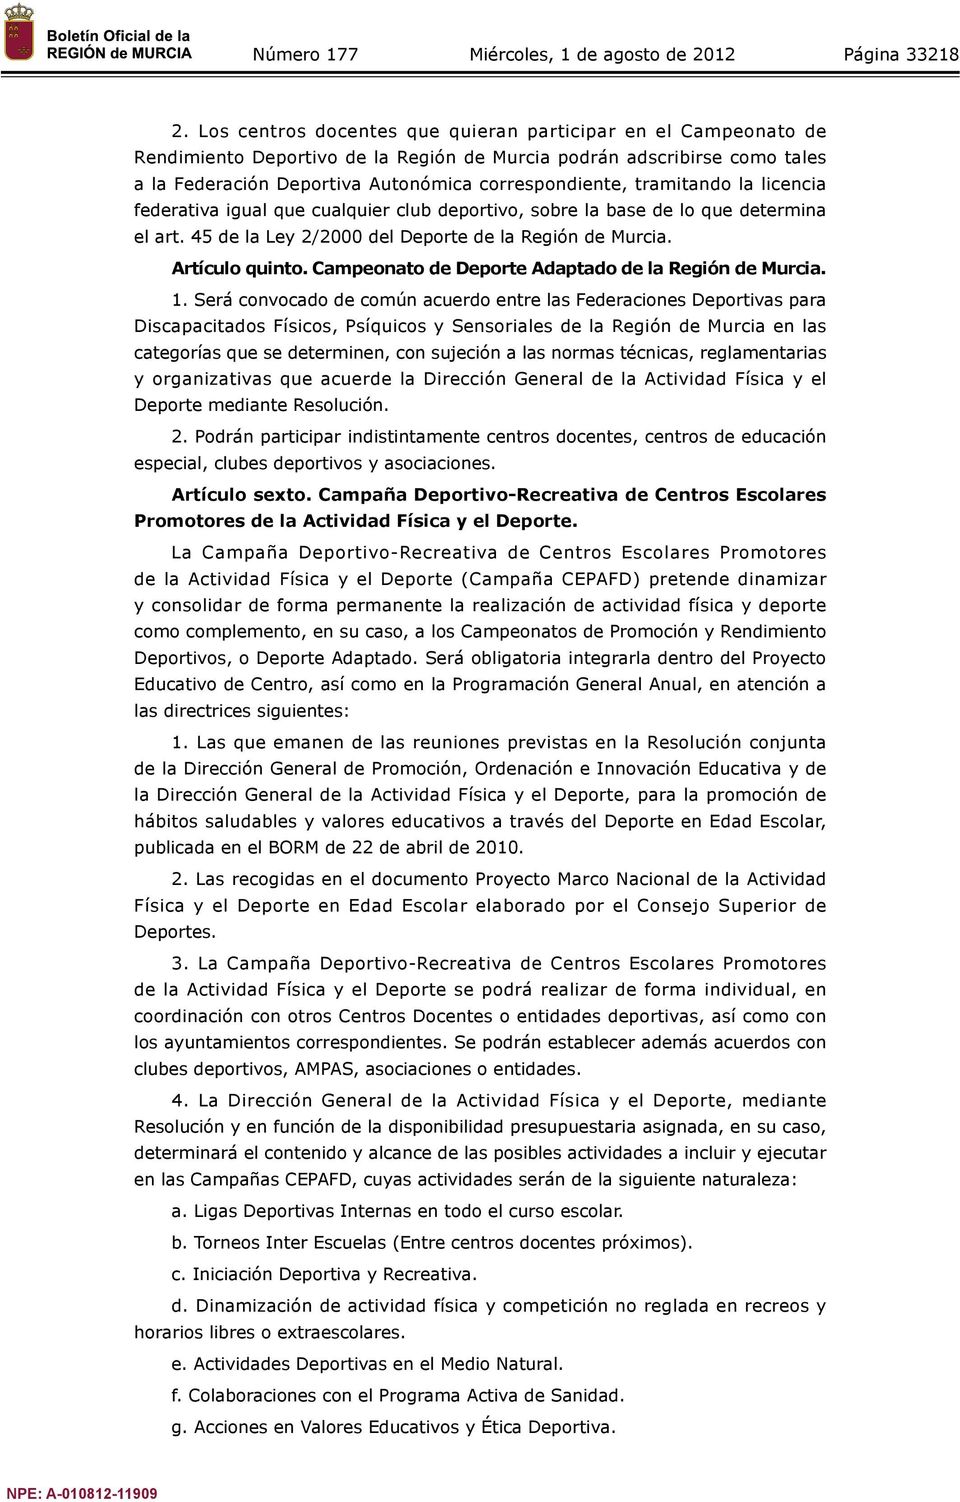 tramitando la licencia federativa igual que cualquier club deportivo, sobre la base de lo que determina el art. 45 de la Ley 2/2000 del Deporte de la Región de Murcia. Artículo quinto.